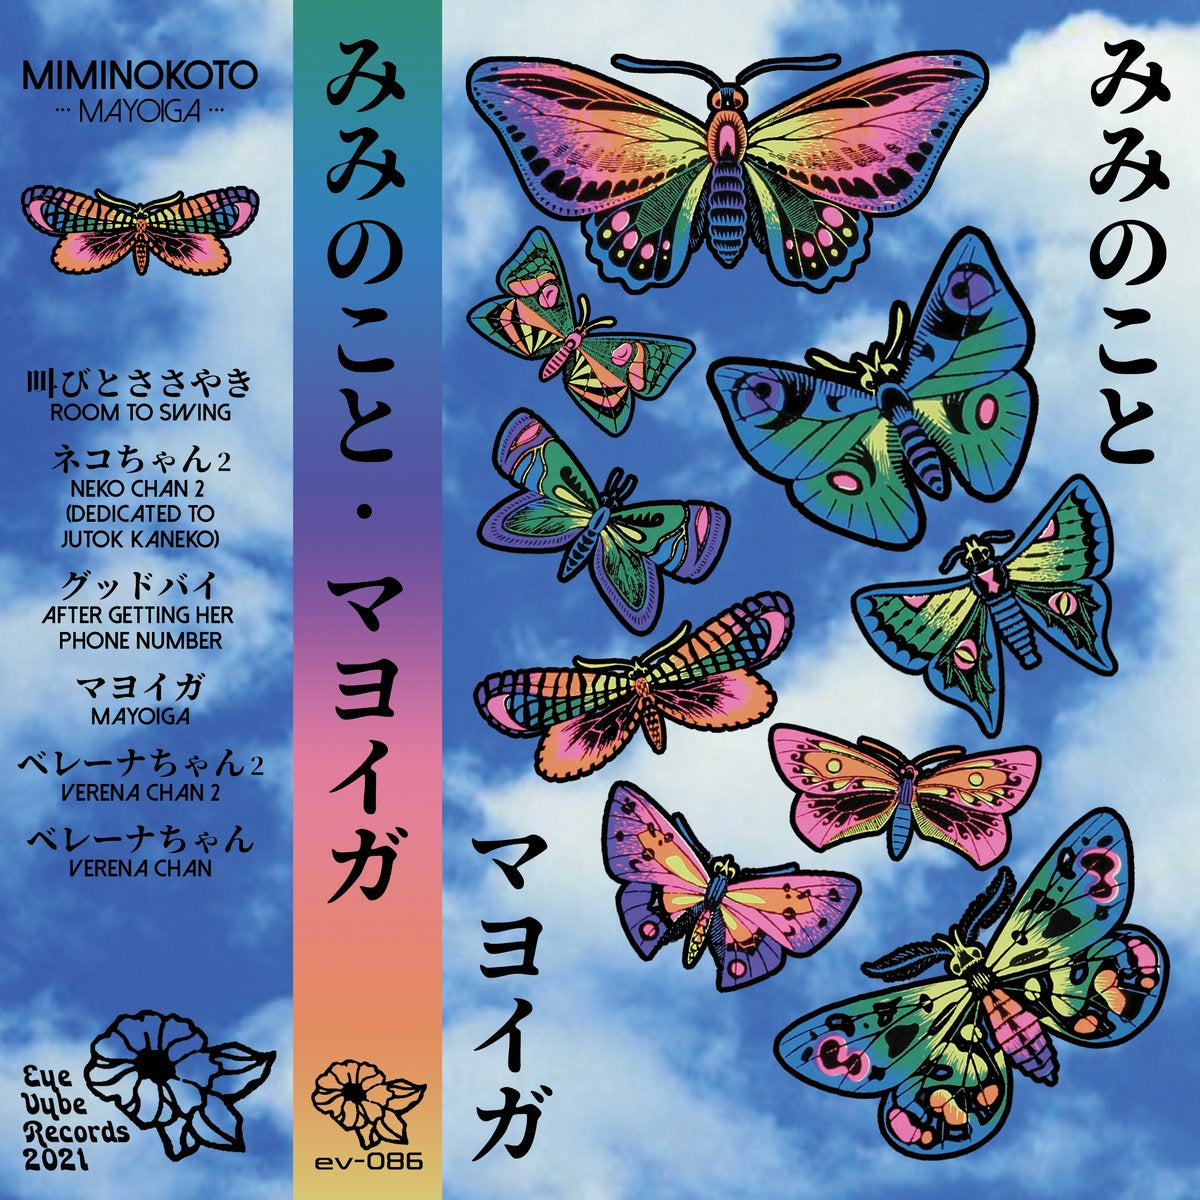 マヨイガ (Miminokoto ) - Mayoiga - New Cassette 2021 Eye Vybe Records Tape - Psychedelic Rock / Experimental